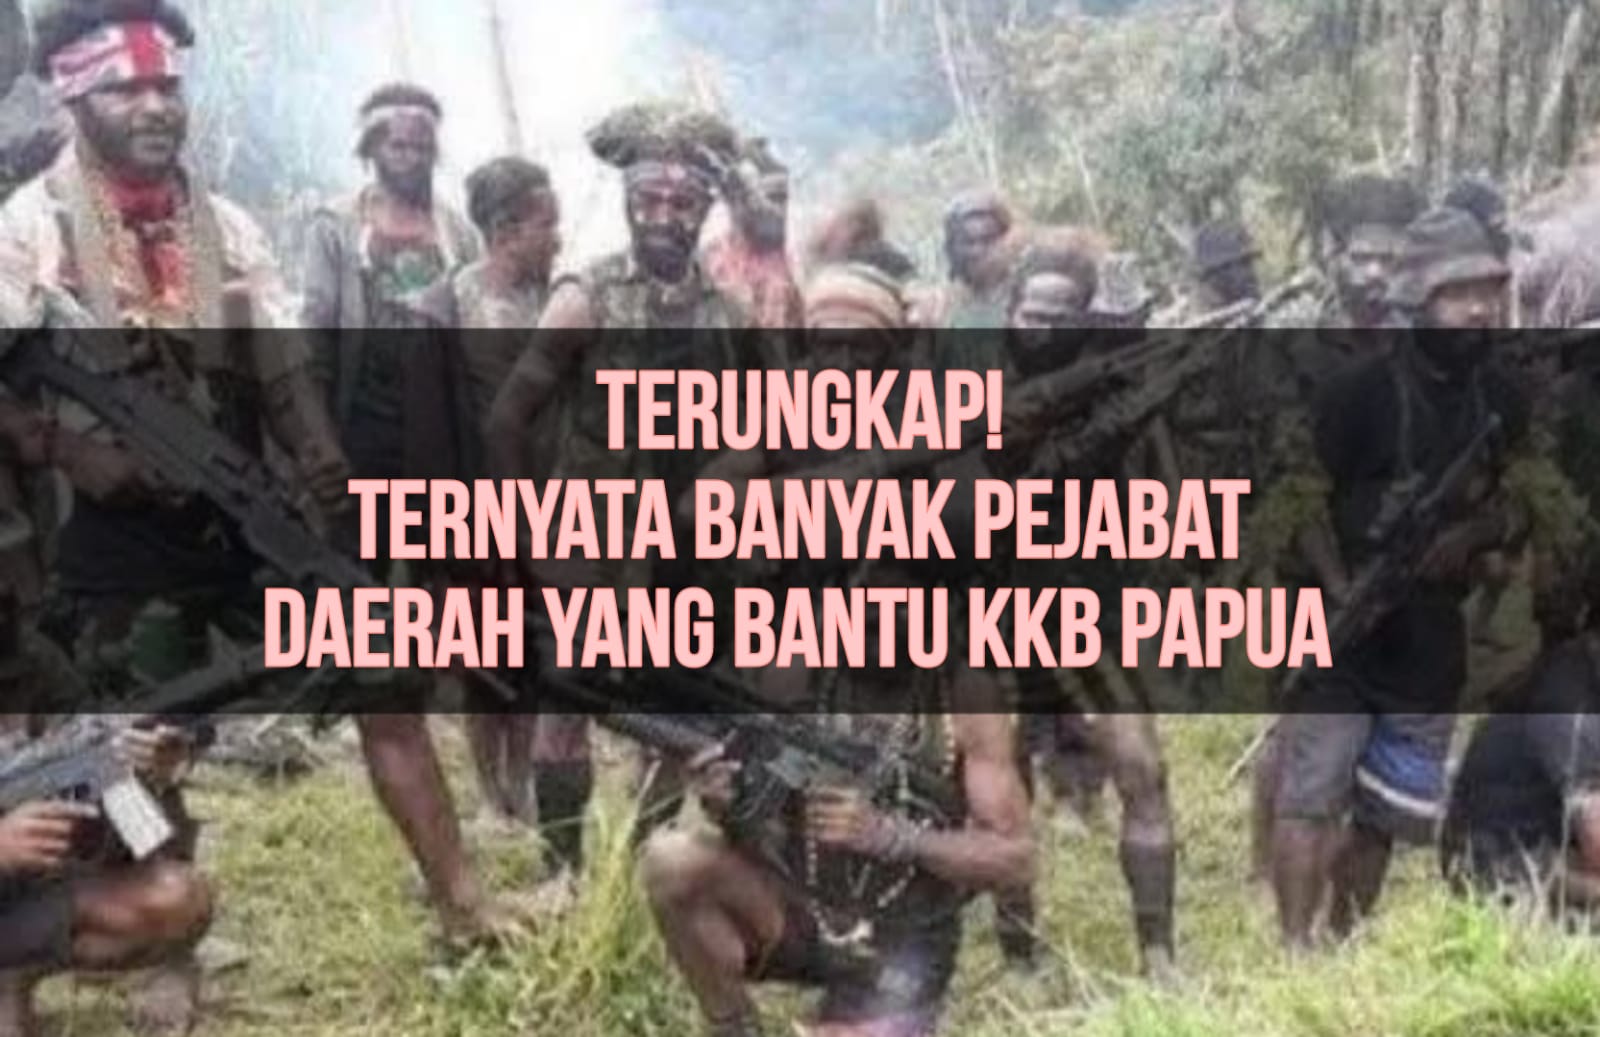 Terungkap! Ternyata Banyak Pejabat Daerah yang Bantu KKB Papua, Harus Segera Ditindak!